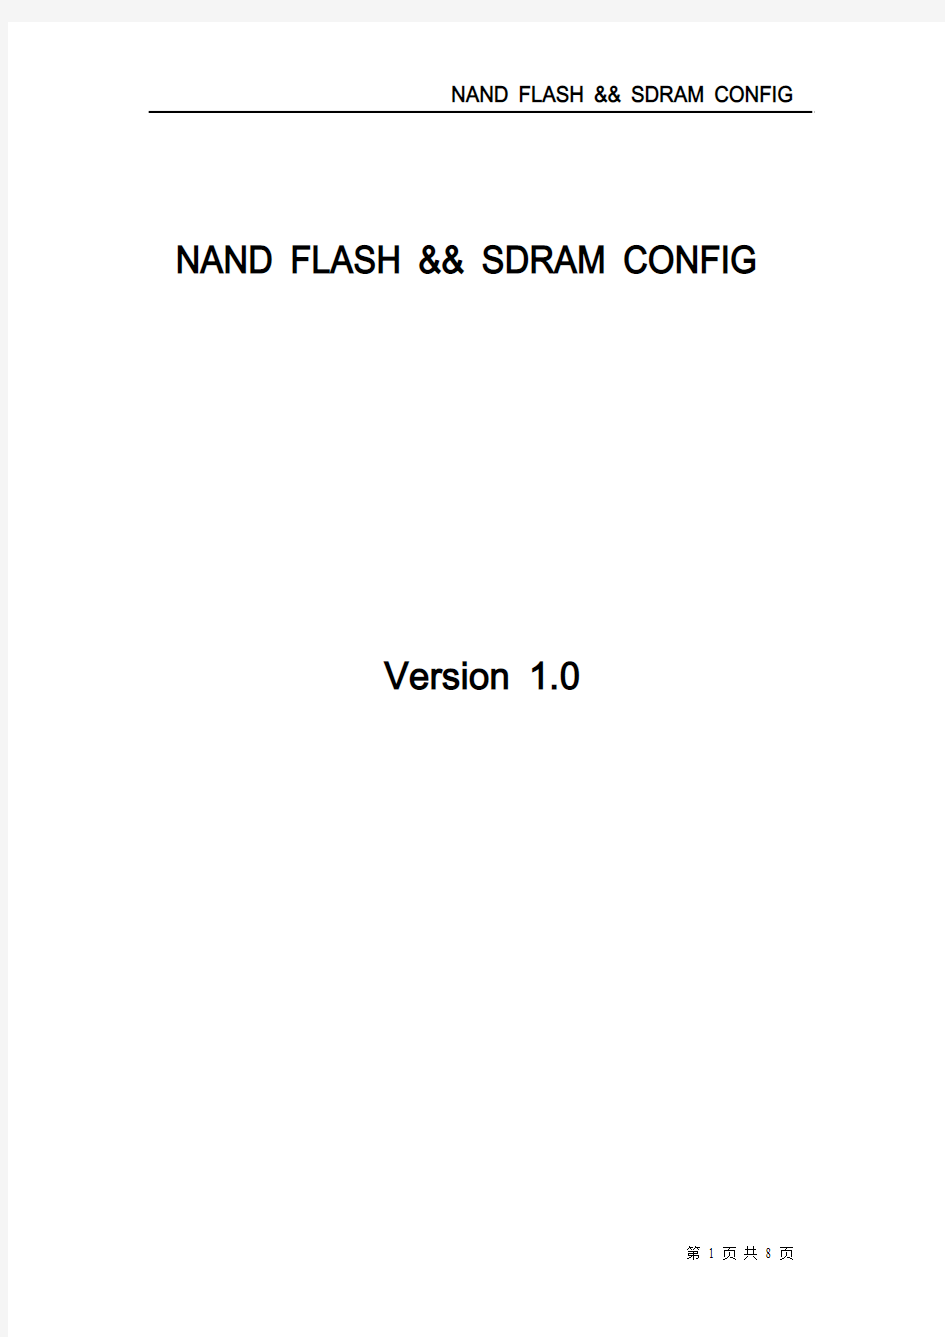 RDA8810 nand flash && sdram config